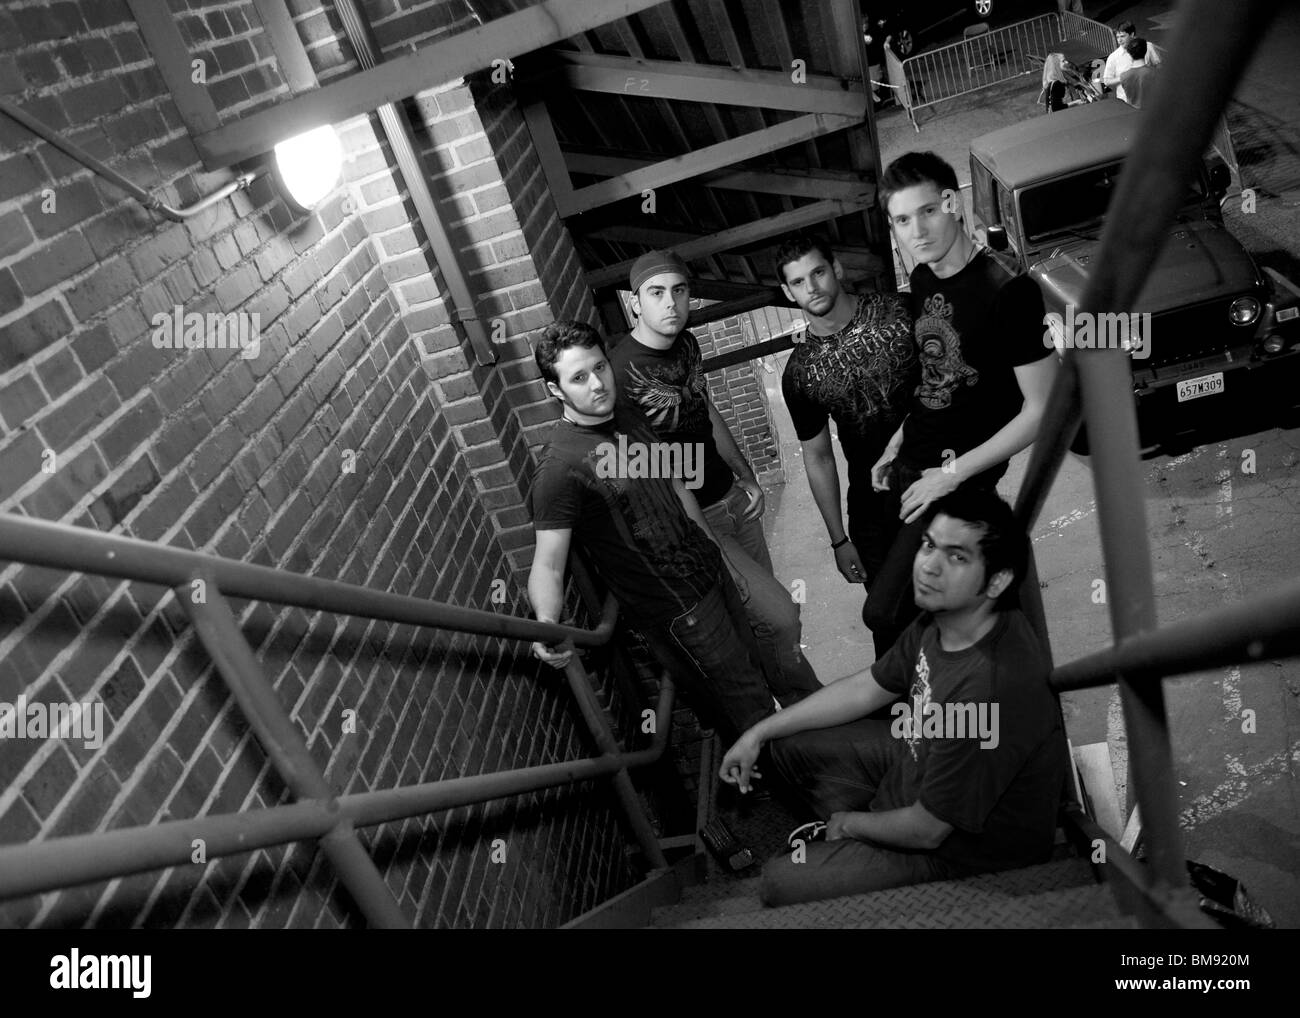 Rock membres du groupe promo photo sur escalier de secours incendie Banque D'Images